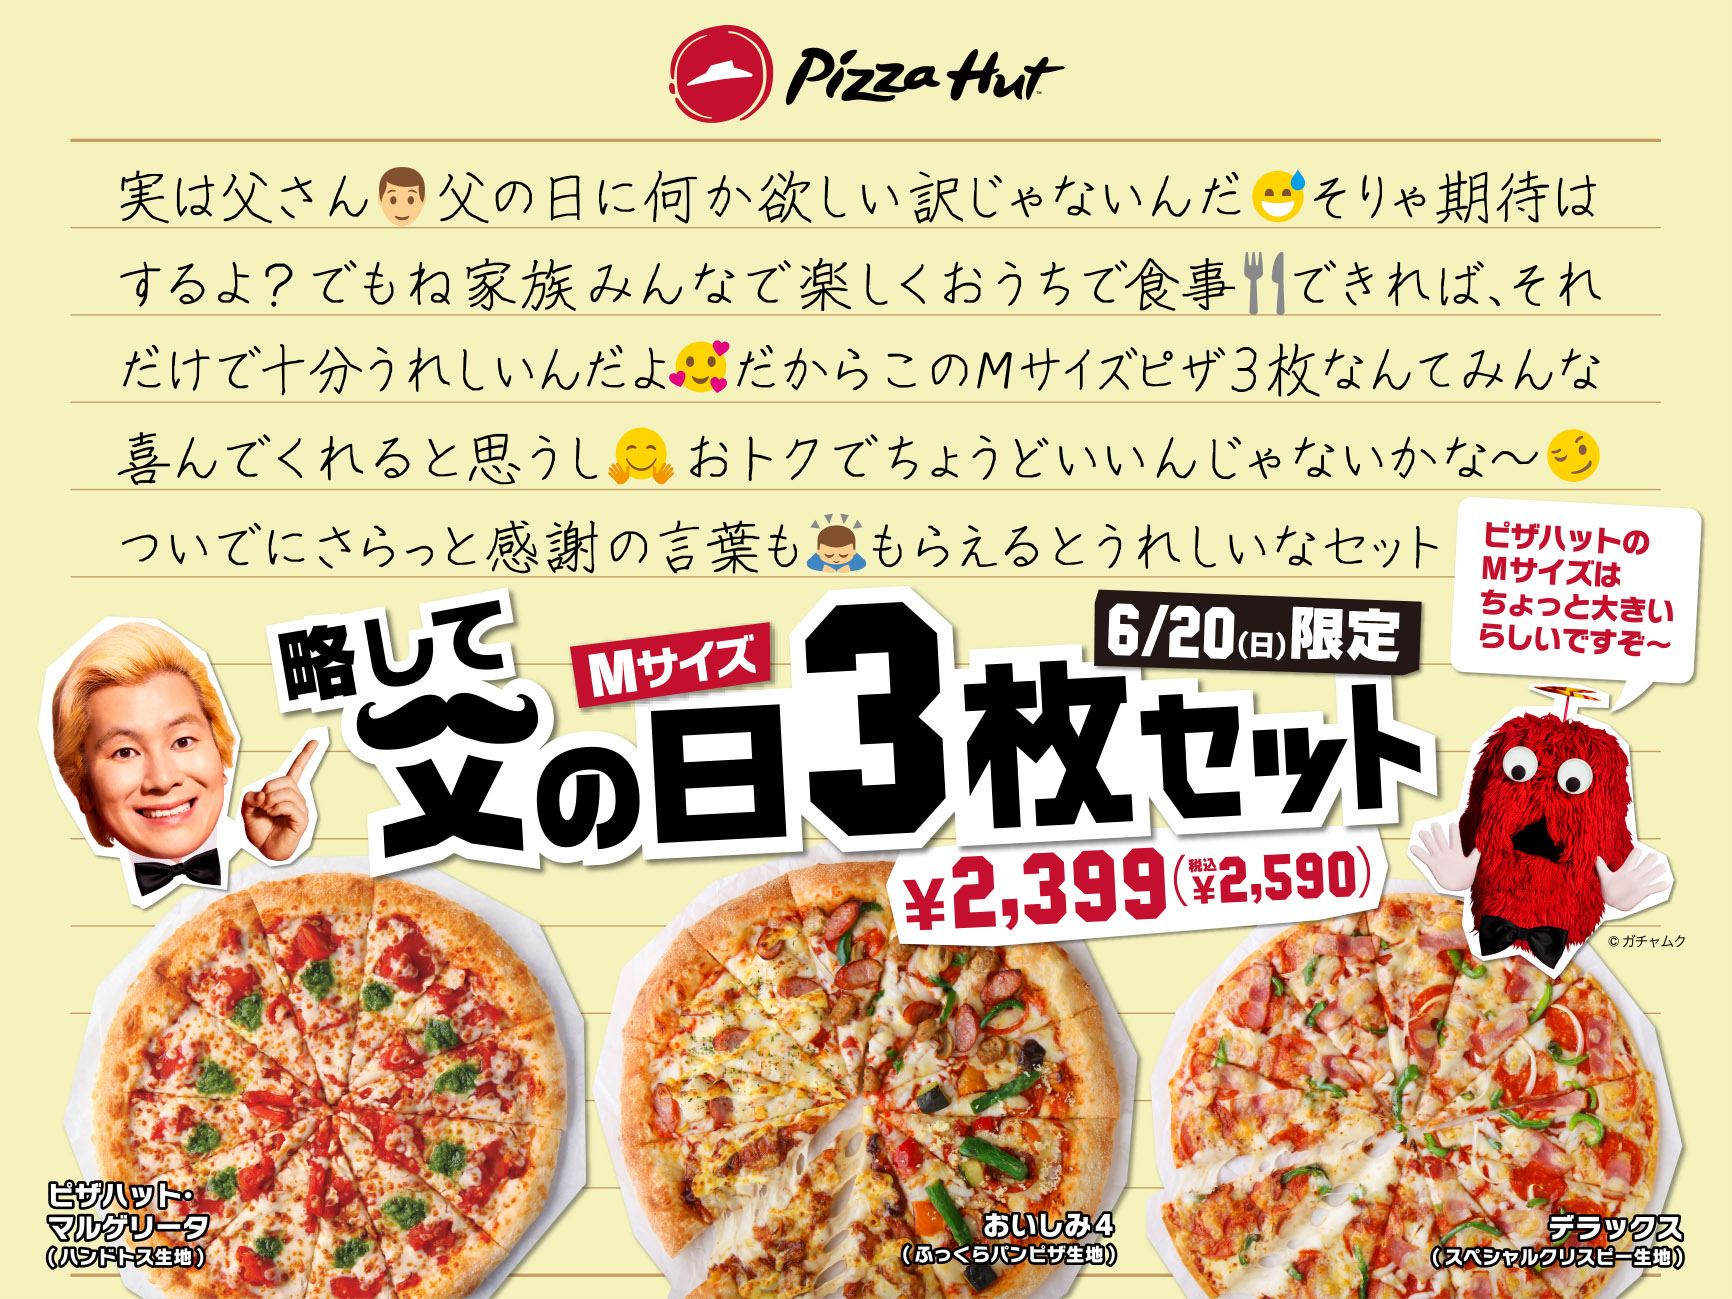 ピザハットが 父の日どうする問題 を解決 日本一長い名前のセット 6 限定発売 日本ピザハット株式会社のプレスリリース